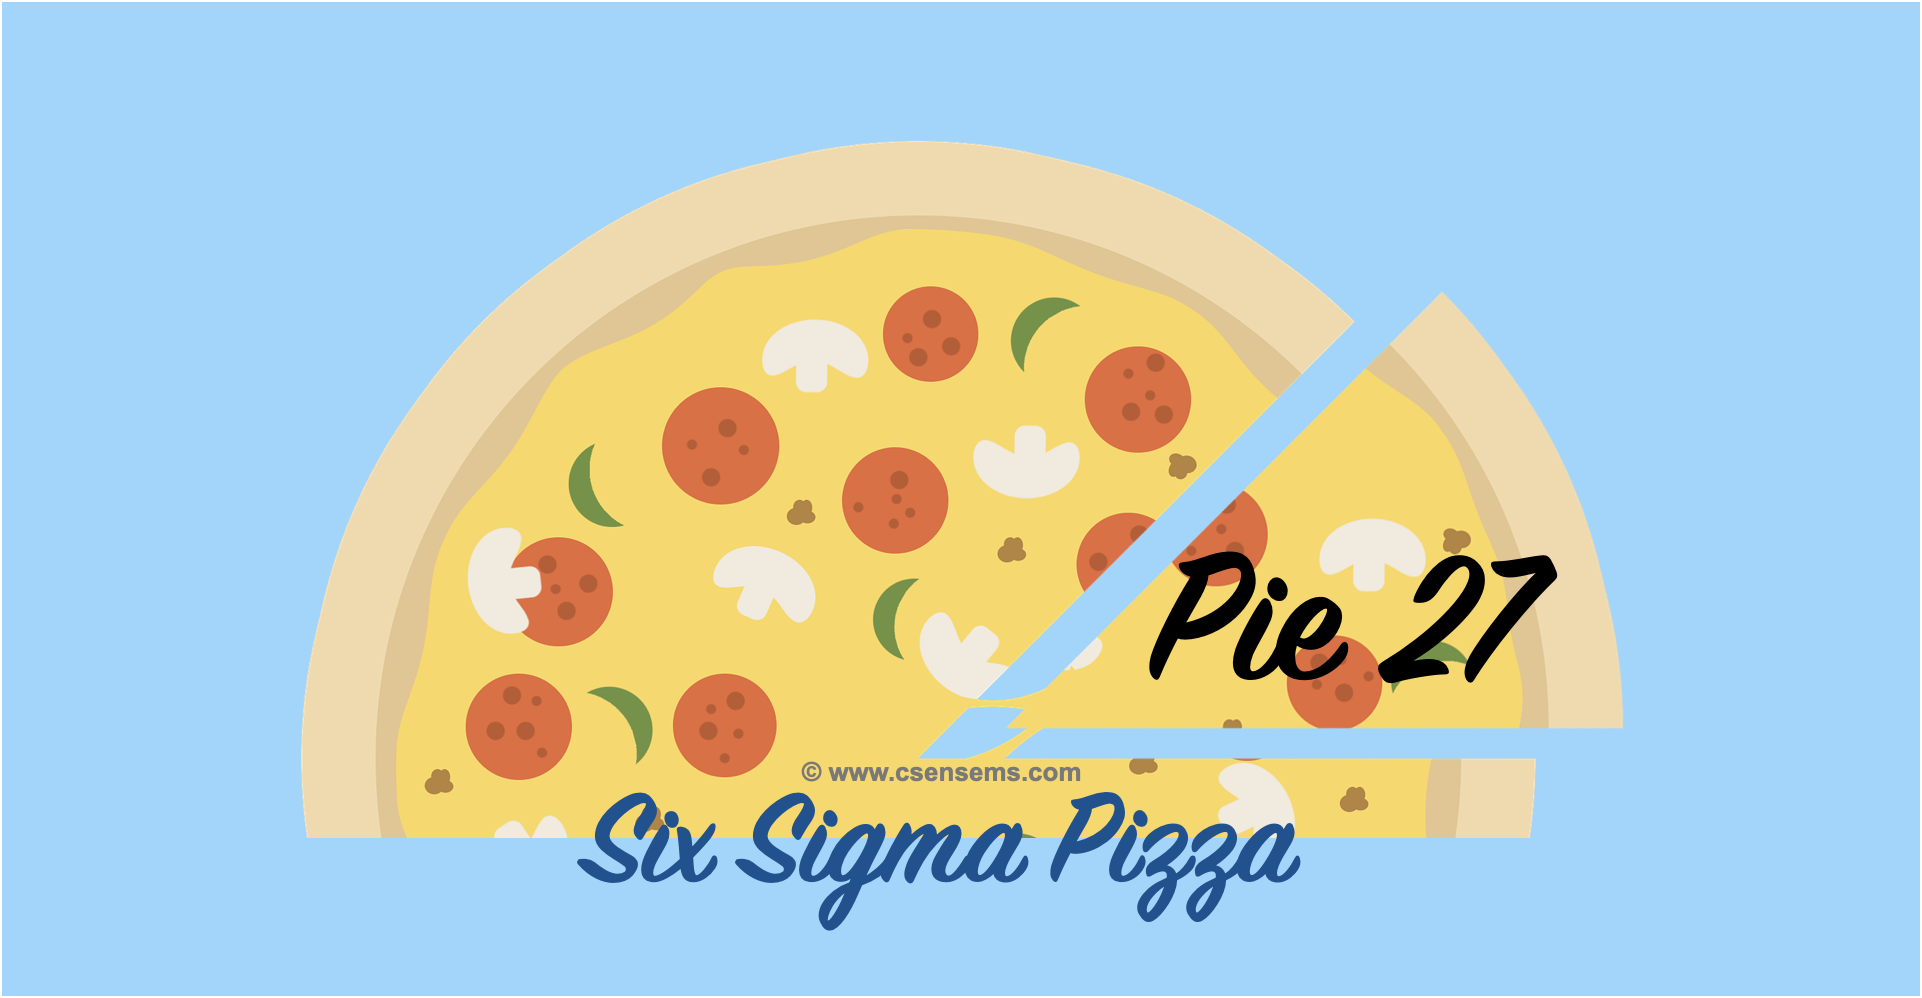 Six Sigma Pizza - Pie 27